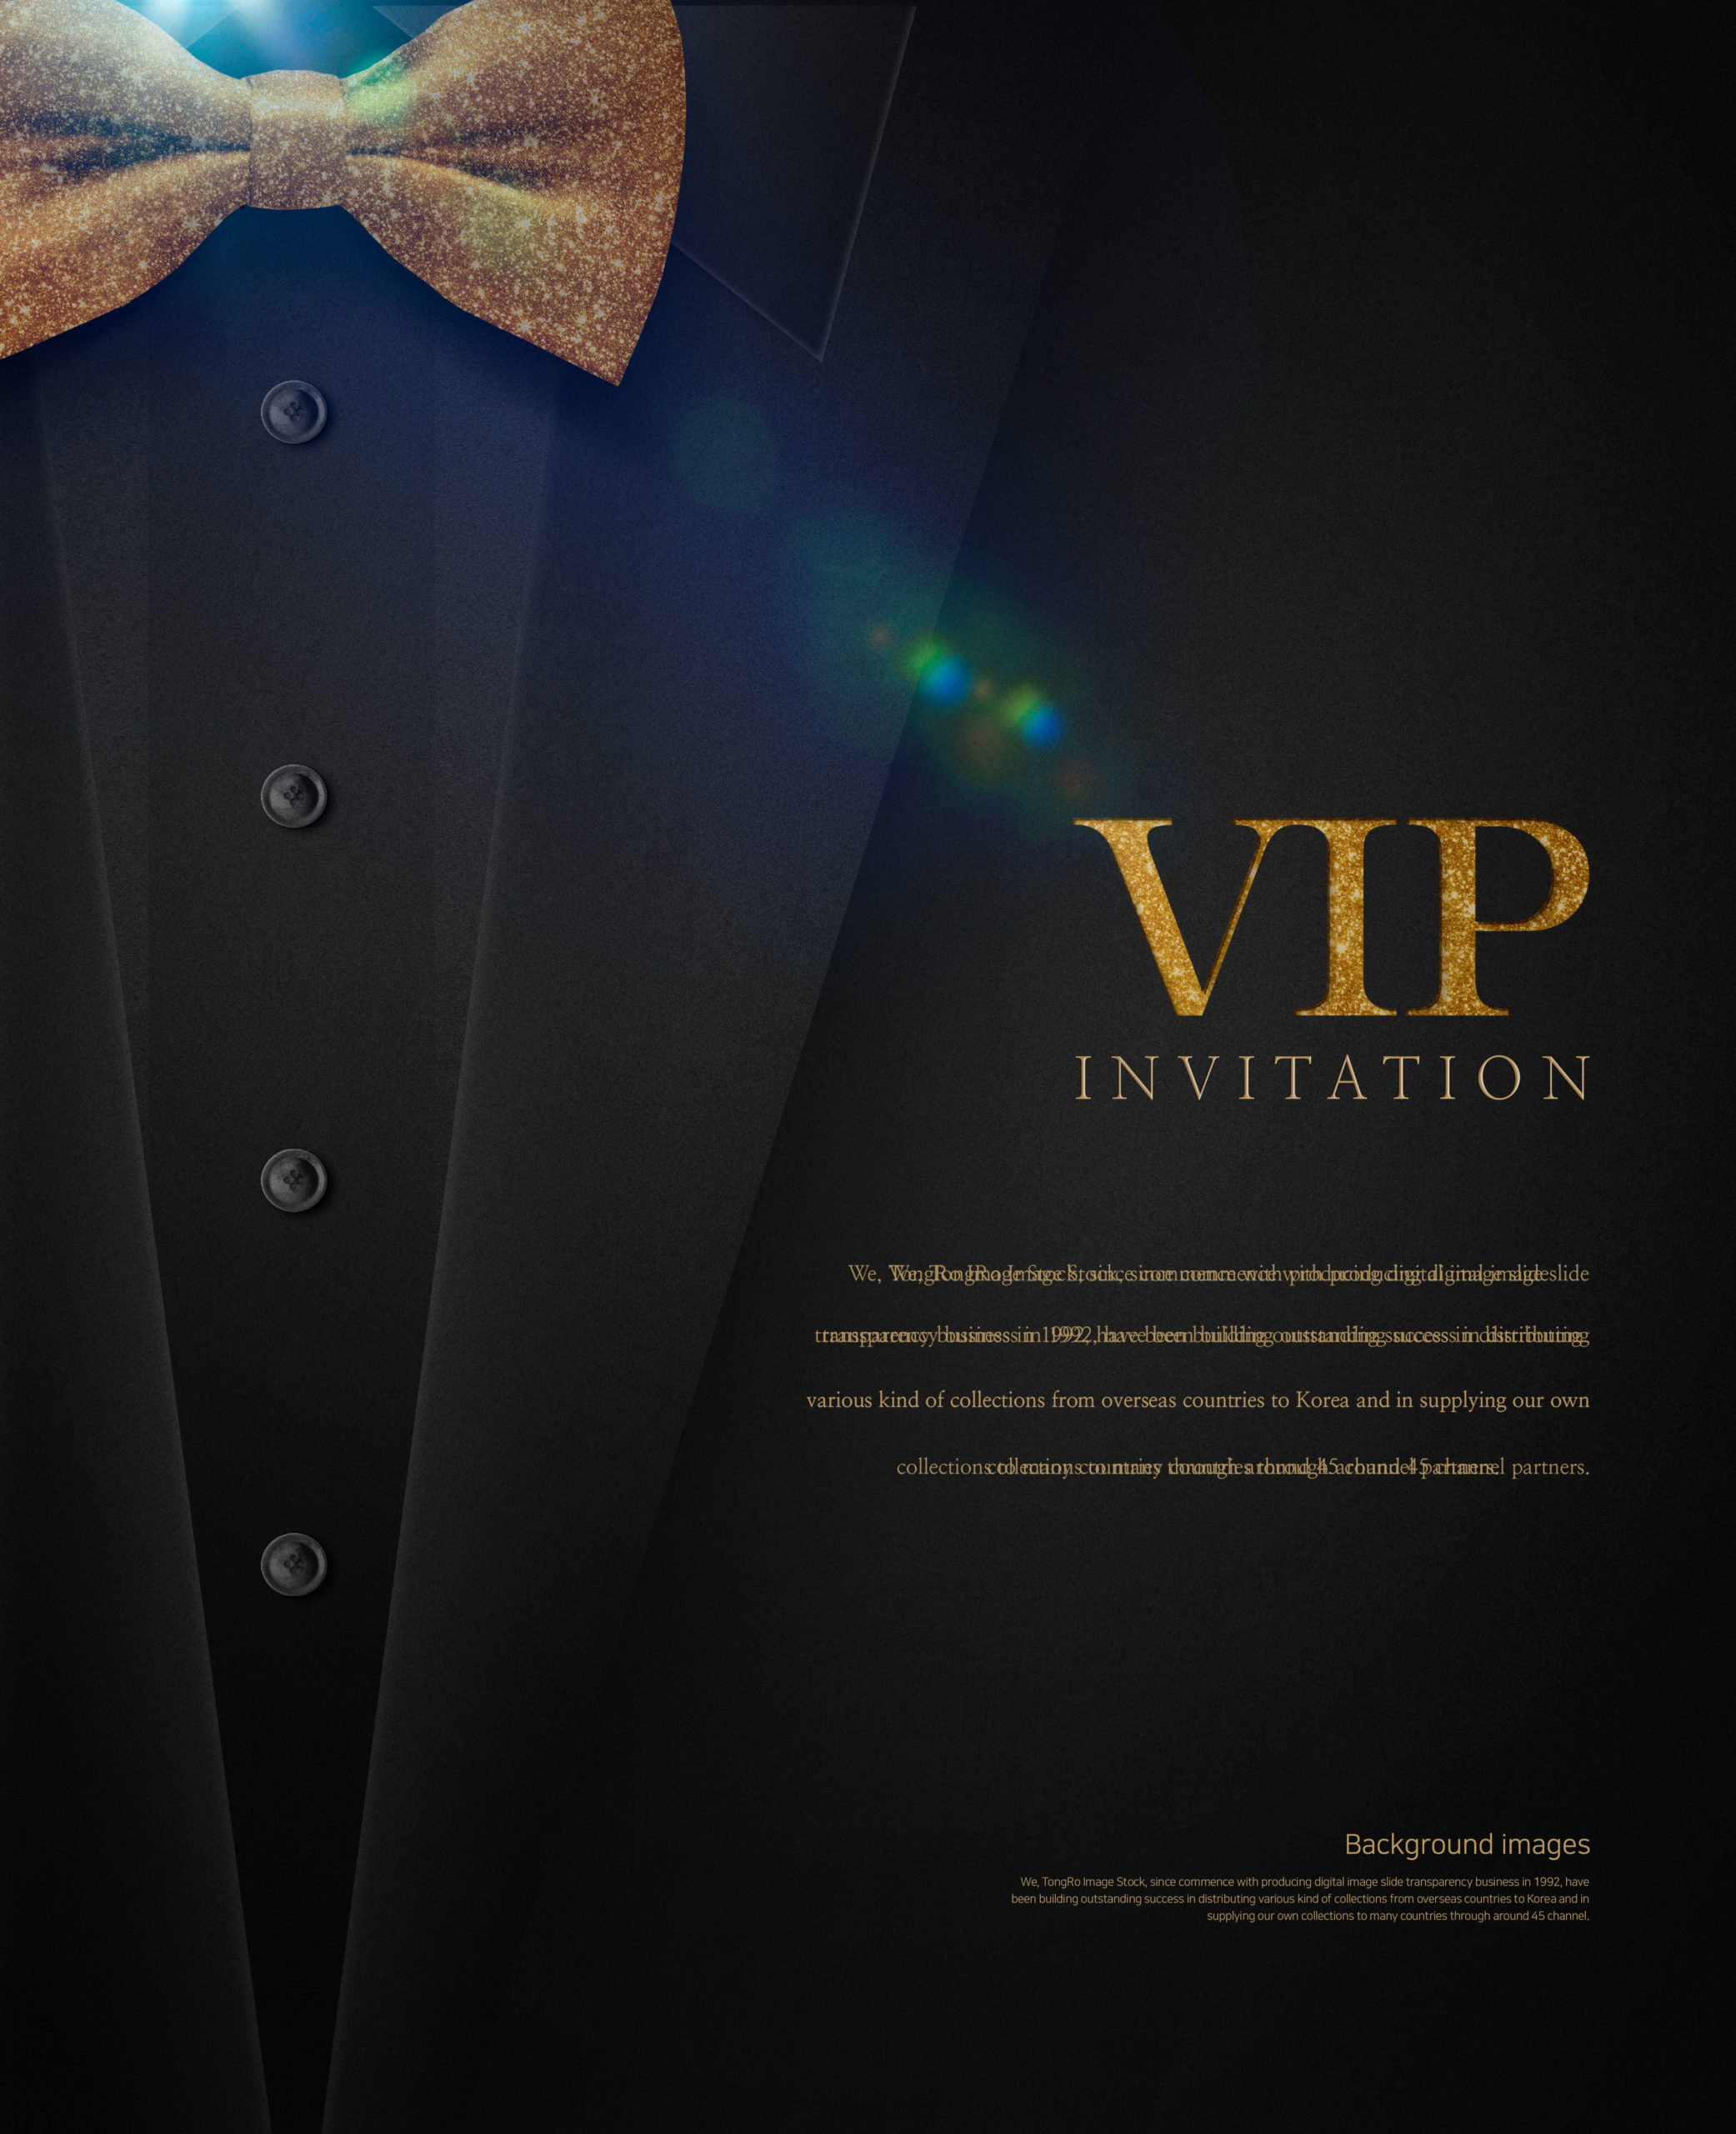 高端豪华风格VIP贵宾邀请邀请函海报背景图片套装[PSD]插图(3)